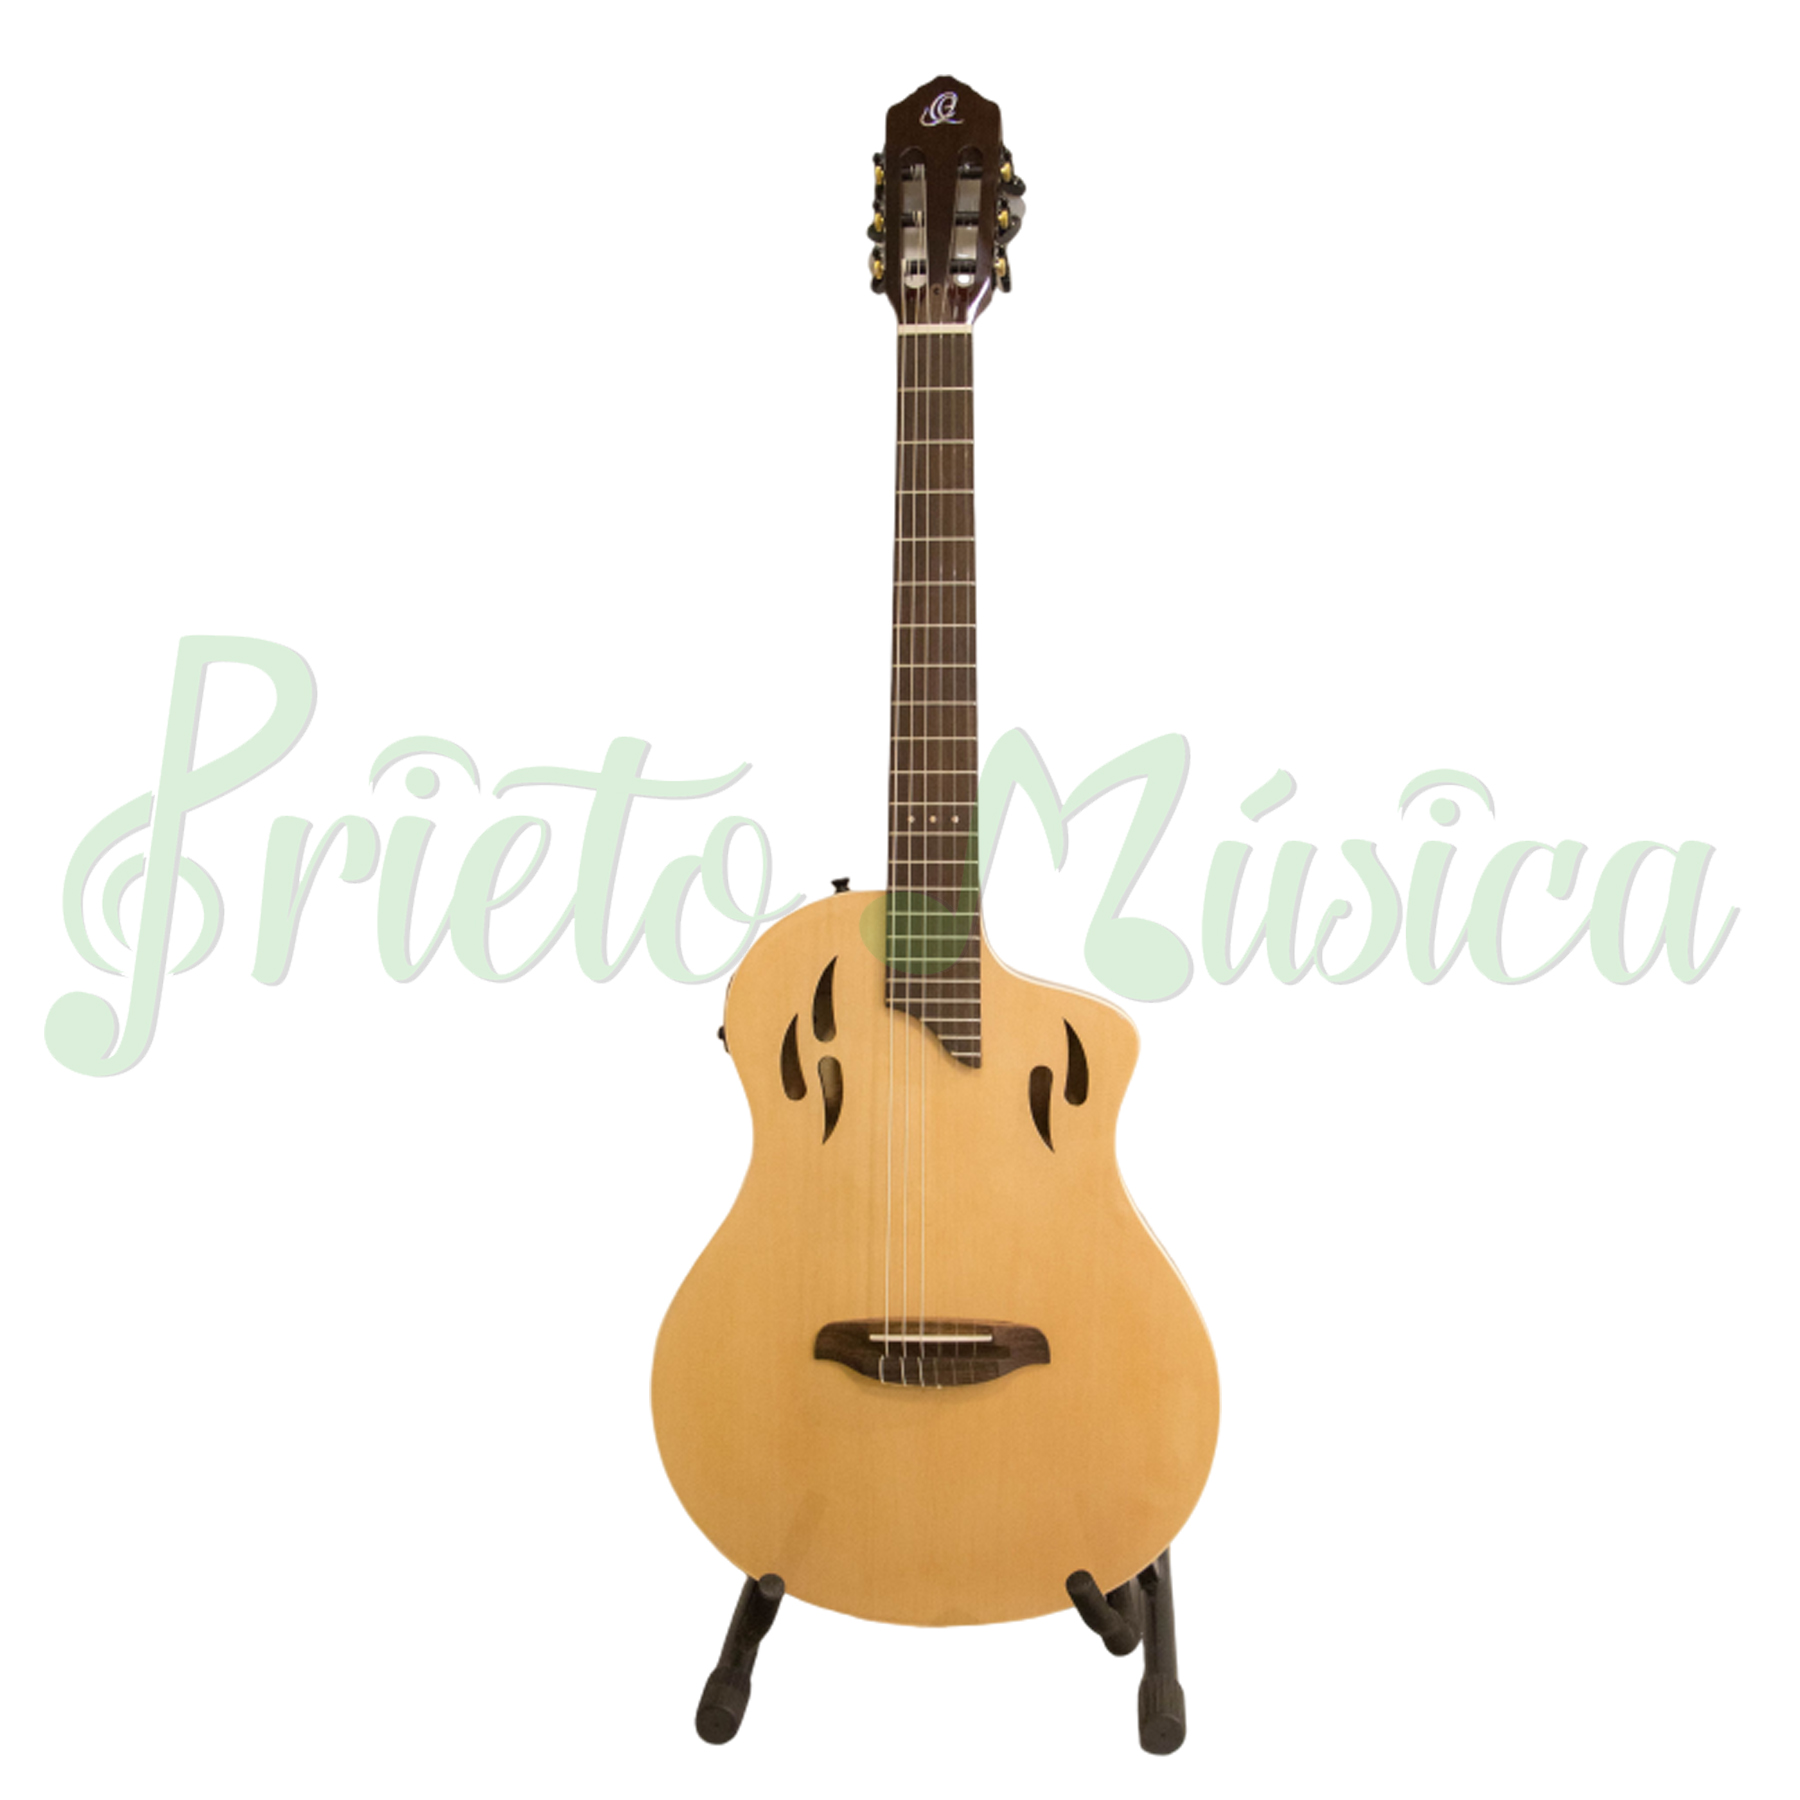 Compra guitarra Ortega Tour Player al mejor precio en Prieto Msica